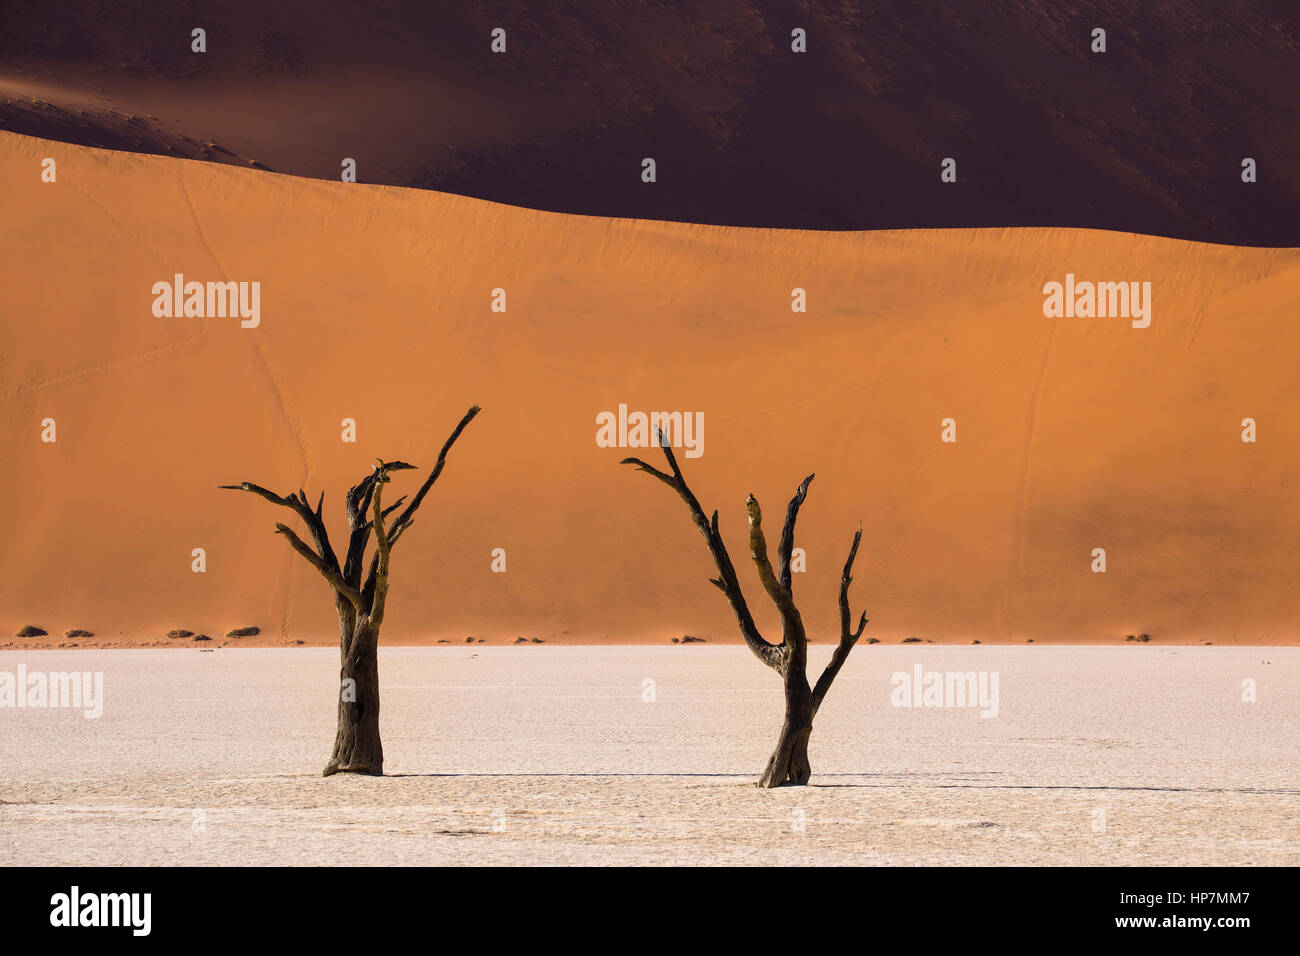 Dunes de sable et les arbres Camelthorn morts, Deadvlei, Sossusvlei, Désert du Namib, Namibie, par Monika Hrdinova/Dembinsky Assoc Photo Banque D'Images